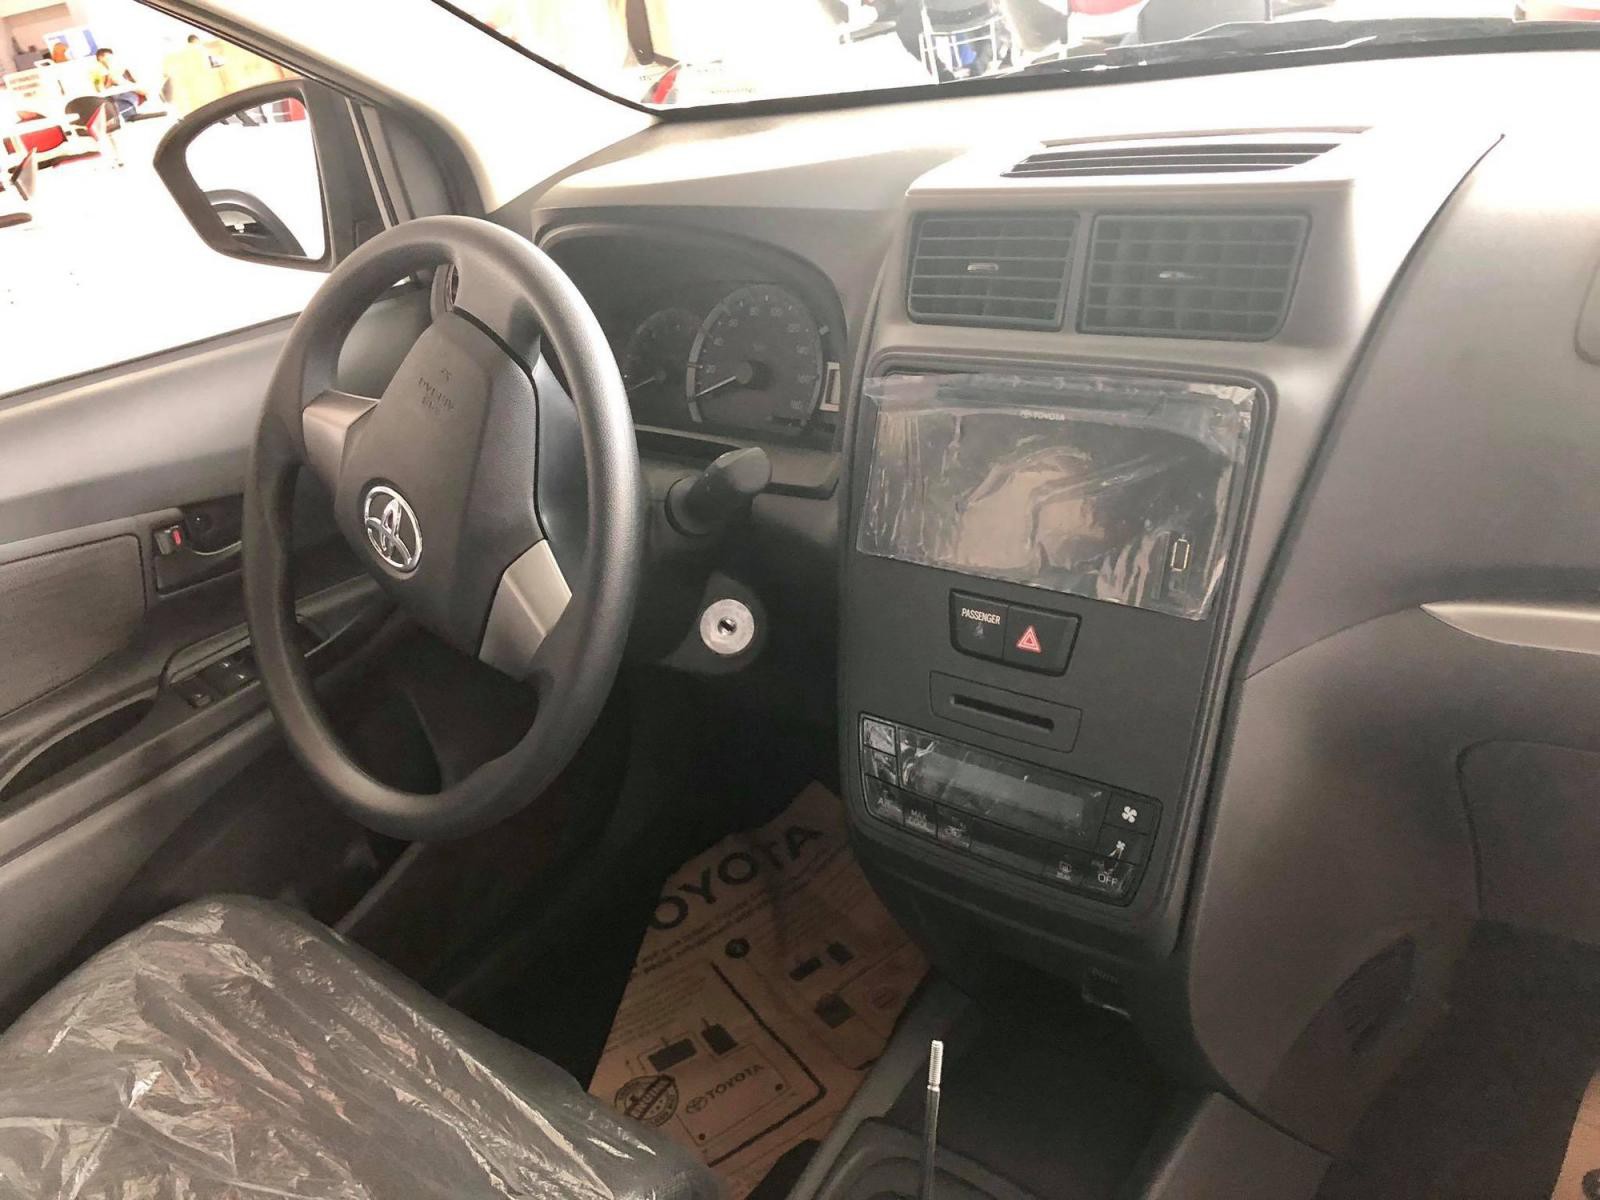 Nội thất Toyota Avanza 2019 cũng có sự thay đổi